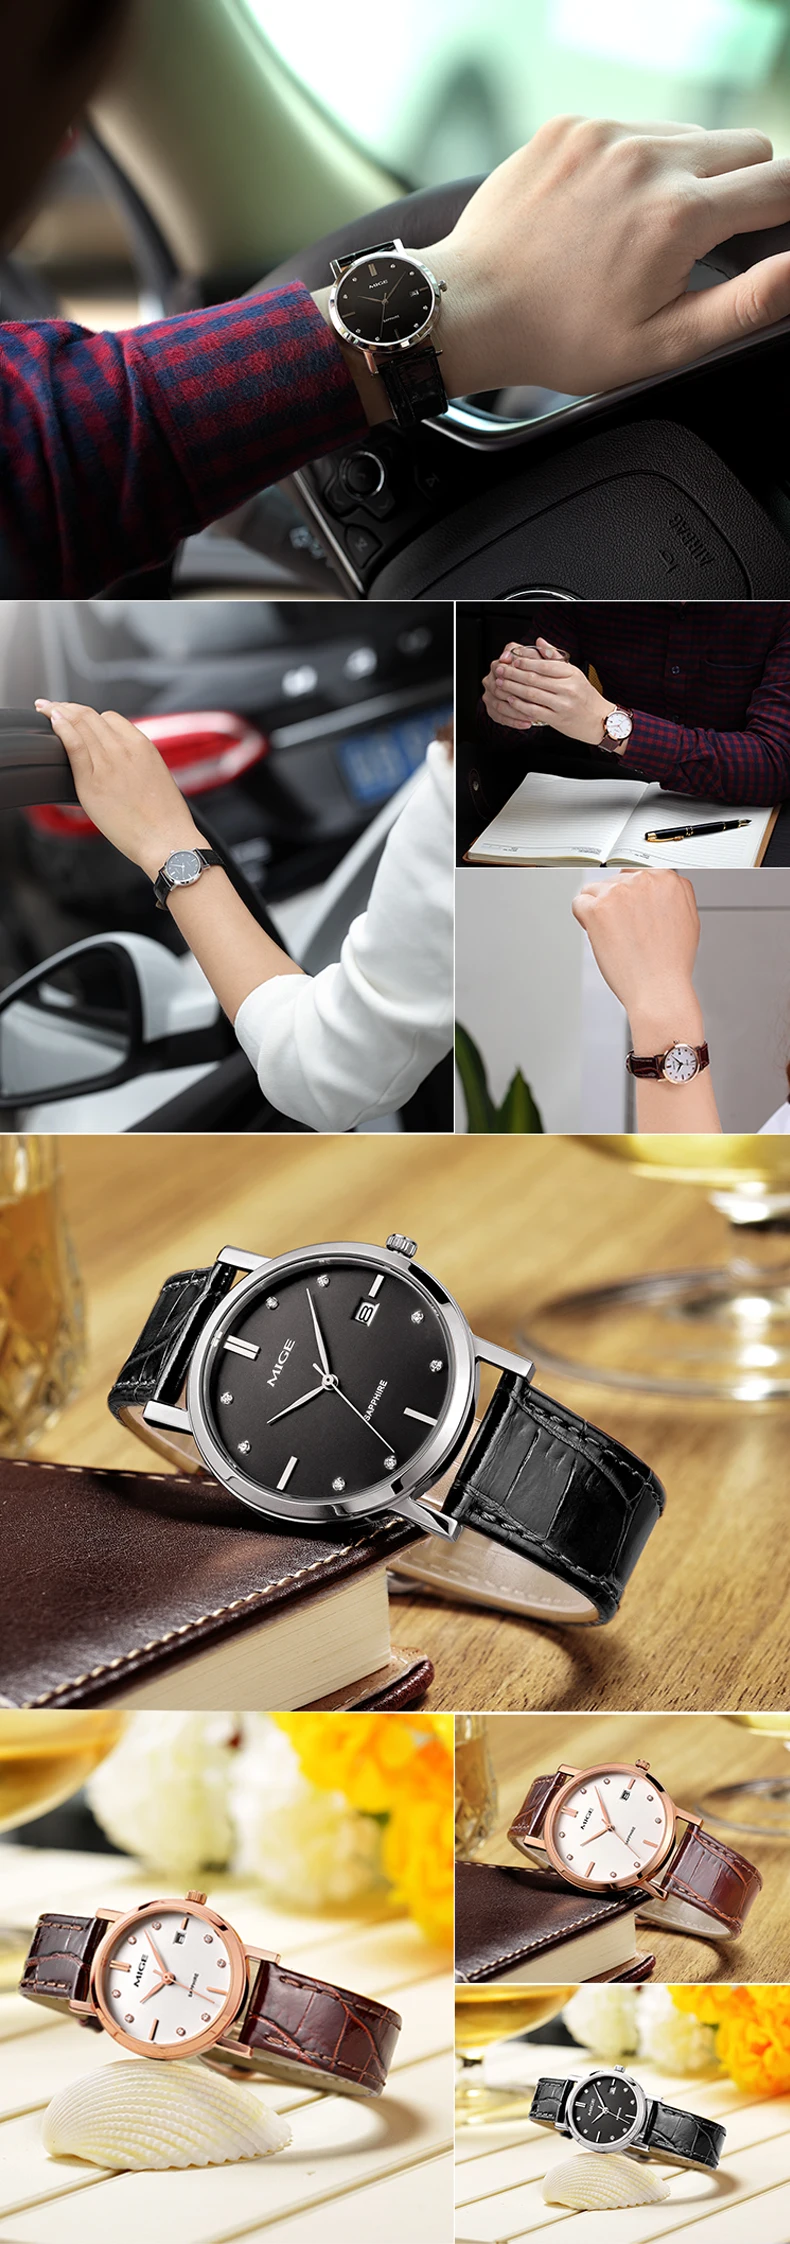 Mige настоящий Топ бренд розовое золото корпус белый черный коричневый кожаный бизнес ультратонкий водонепроницаемый кварцевые мужские часы